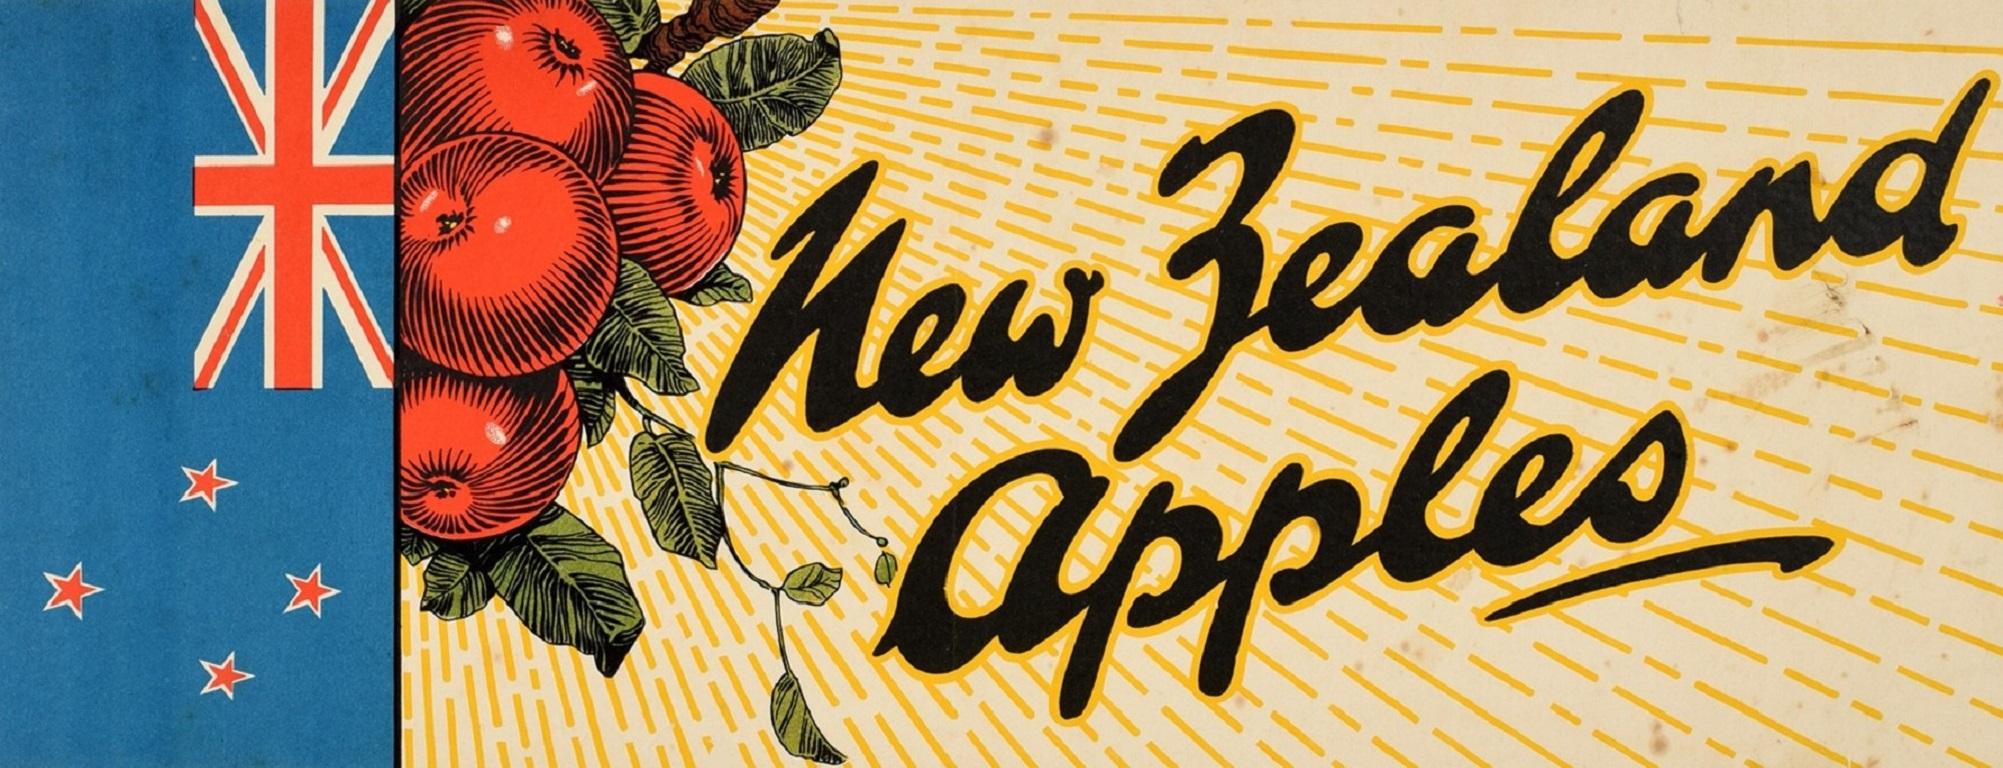 Original Vintage-Werbeplakat für neuseeländische Äpfel mit einem farbenfrohen Design, das frische rote Äpfel auf dem Zweig eines Baumes hinter der neuseeländischen Flagge zeigt, mit Sonnenschein, der von den Früchten im Hintergrund nach vorne